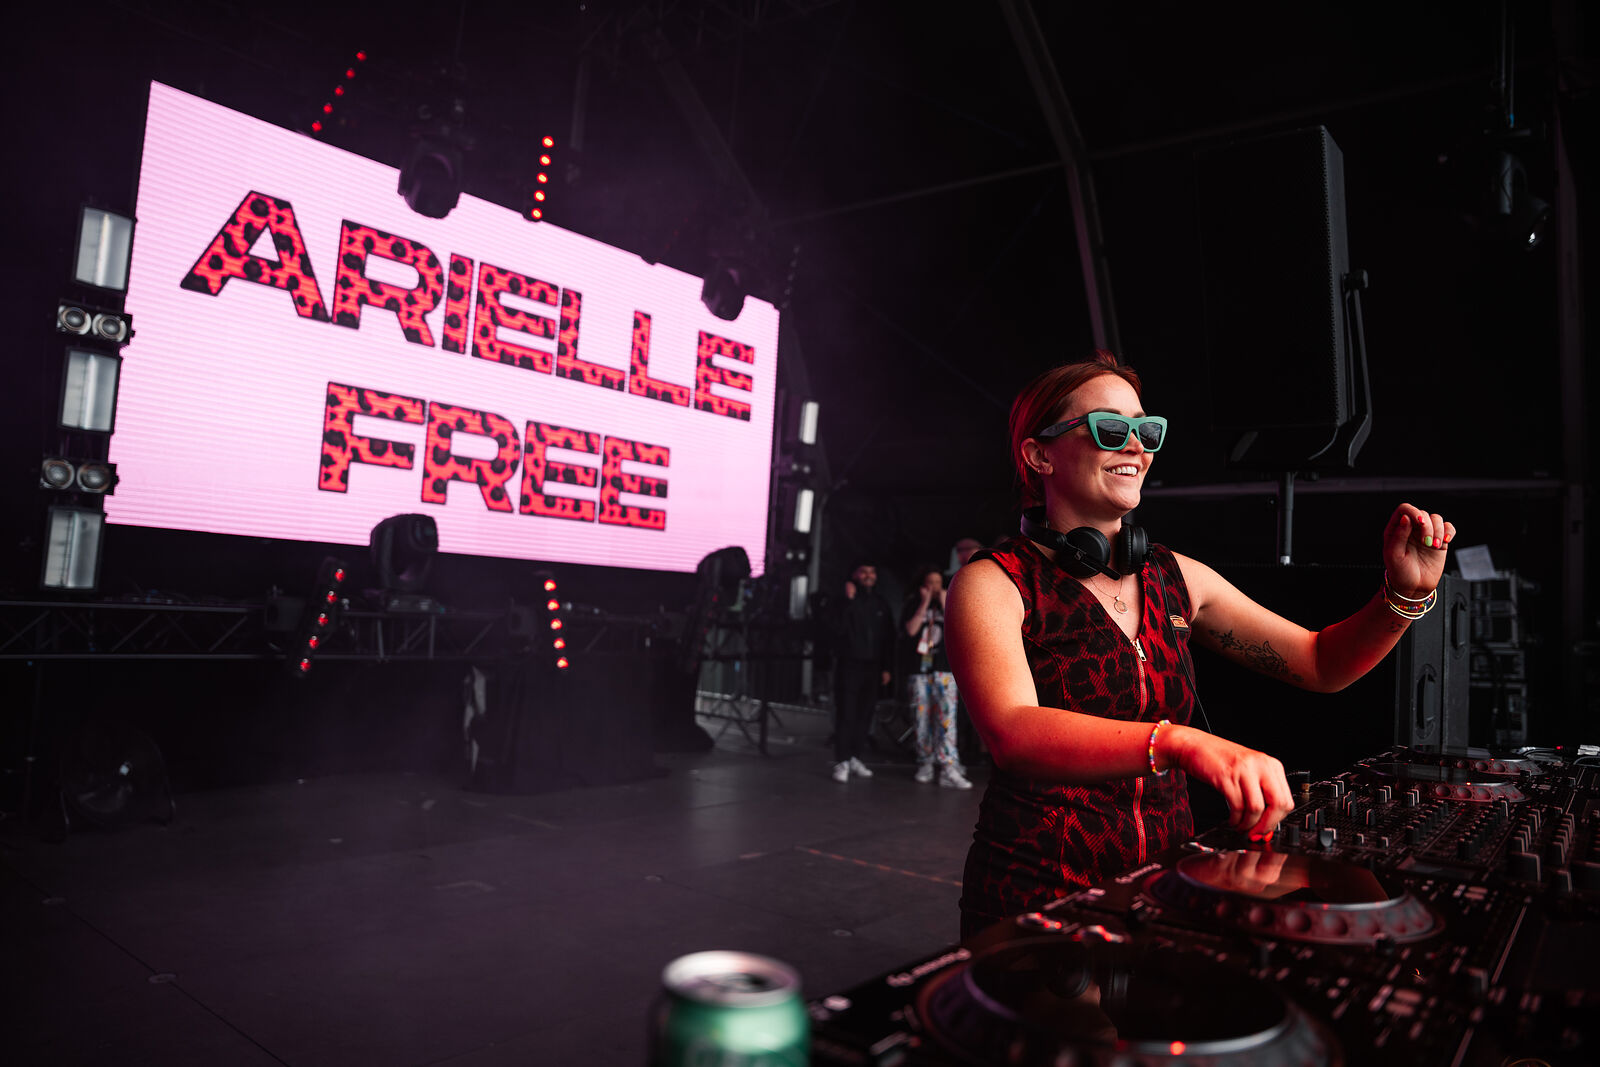 Arielle Free